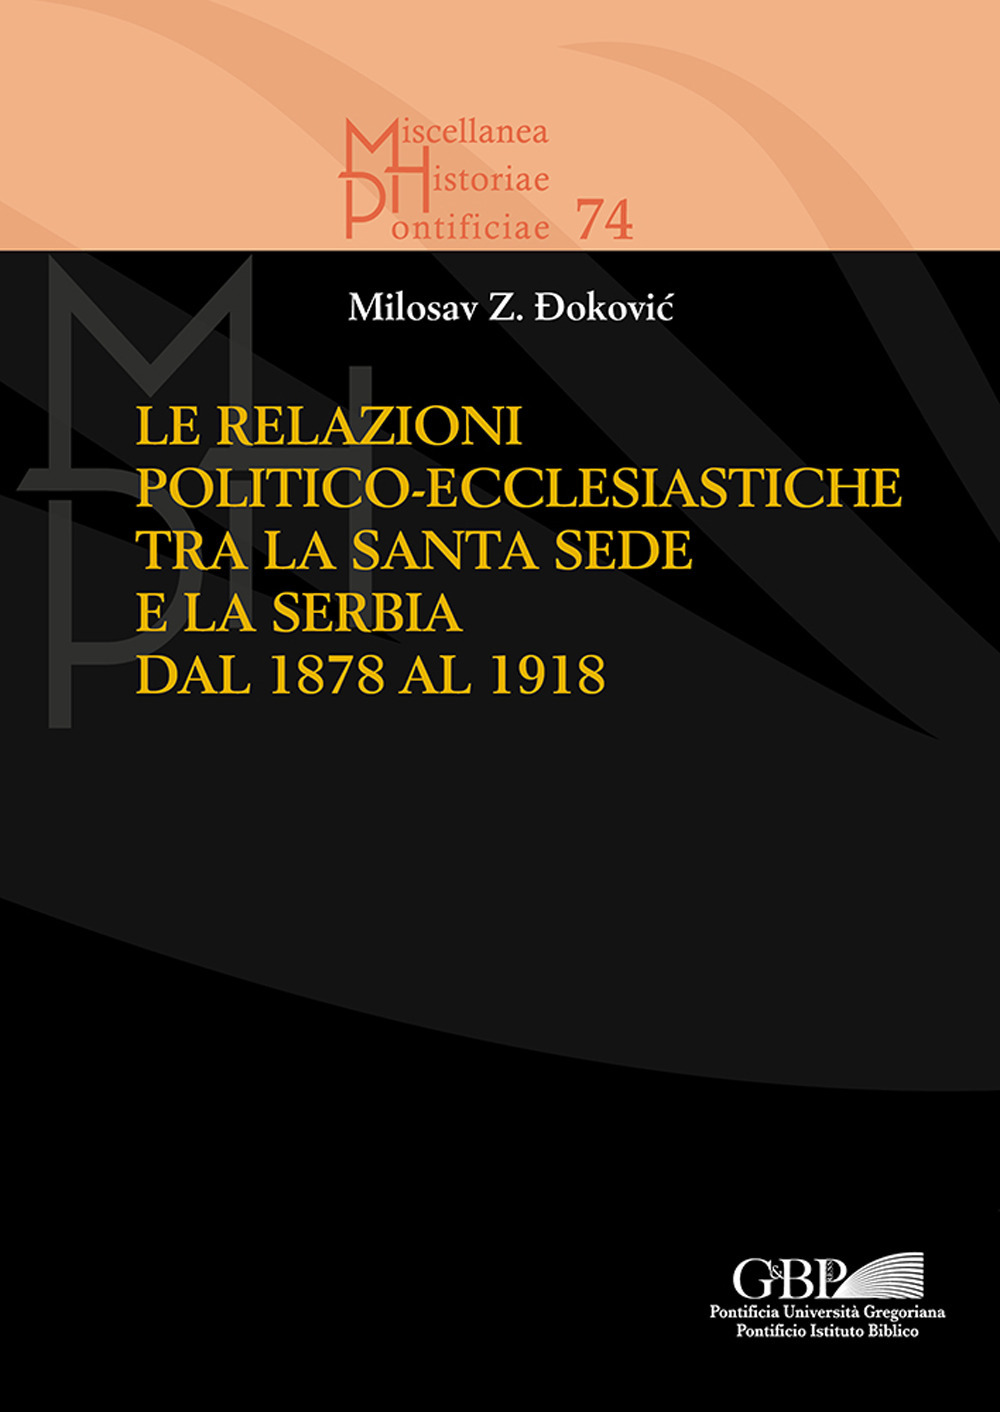 Le relazioni politico-ecclesiastiche tra la Santa Sede e la Serbia dal 1878 al 1918